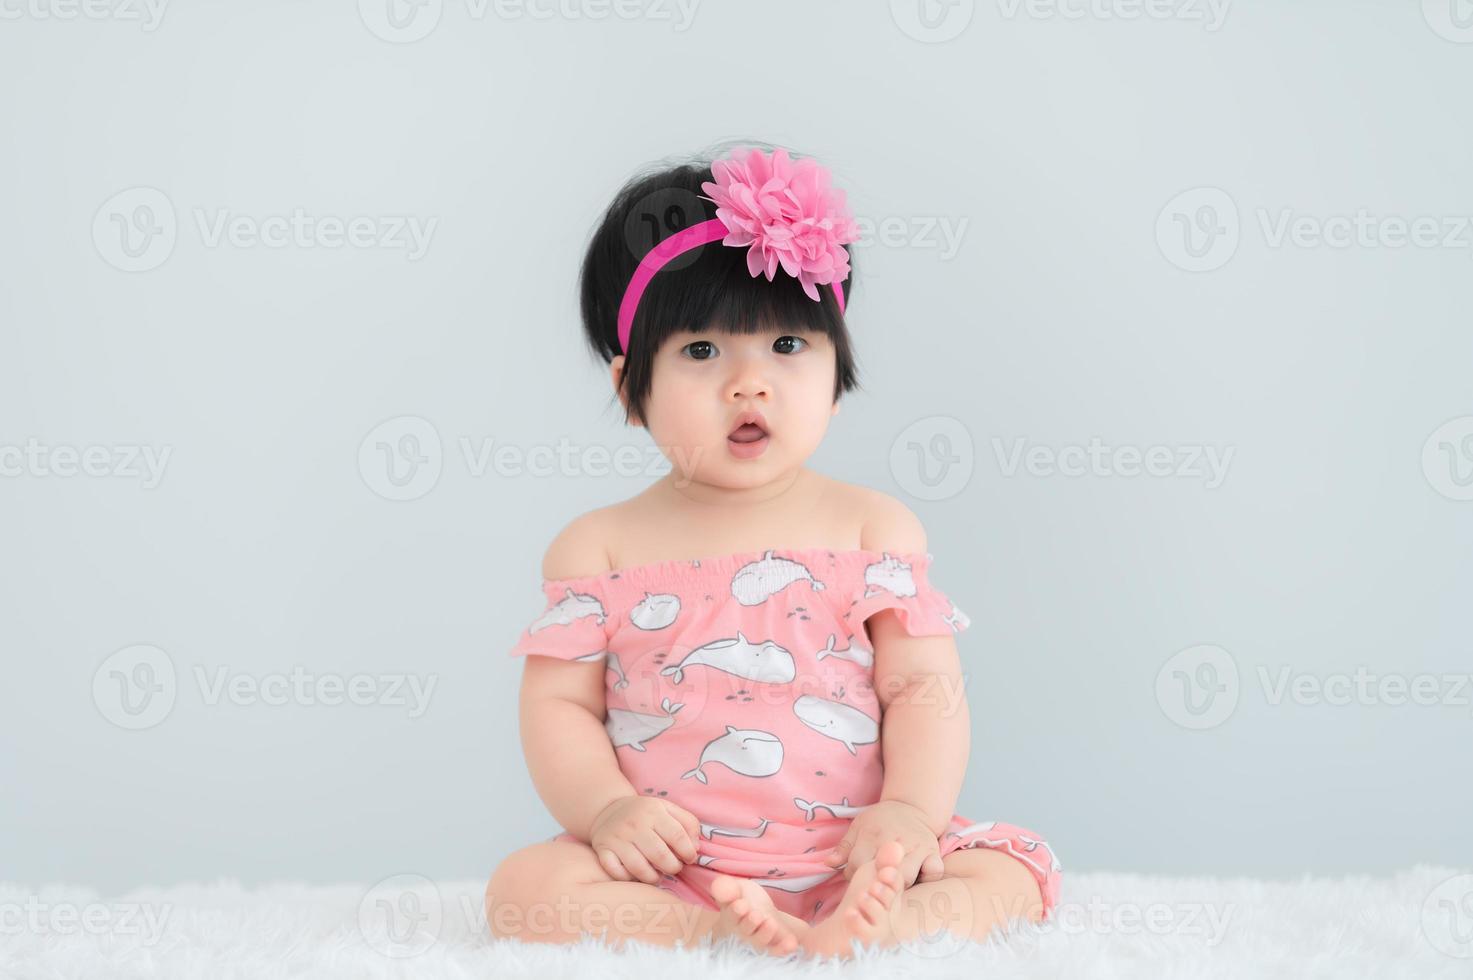 retrato de lindo bebé asiático en alfombra blanca, sonrisa recién nacida para tomar una foto